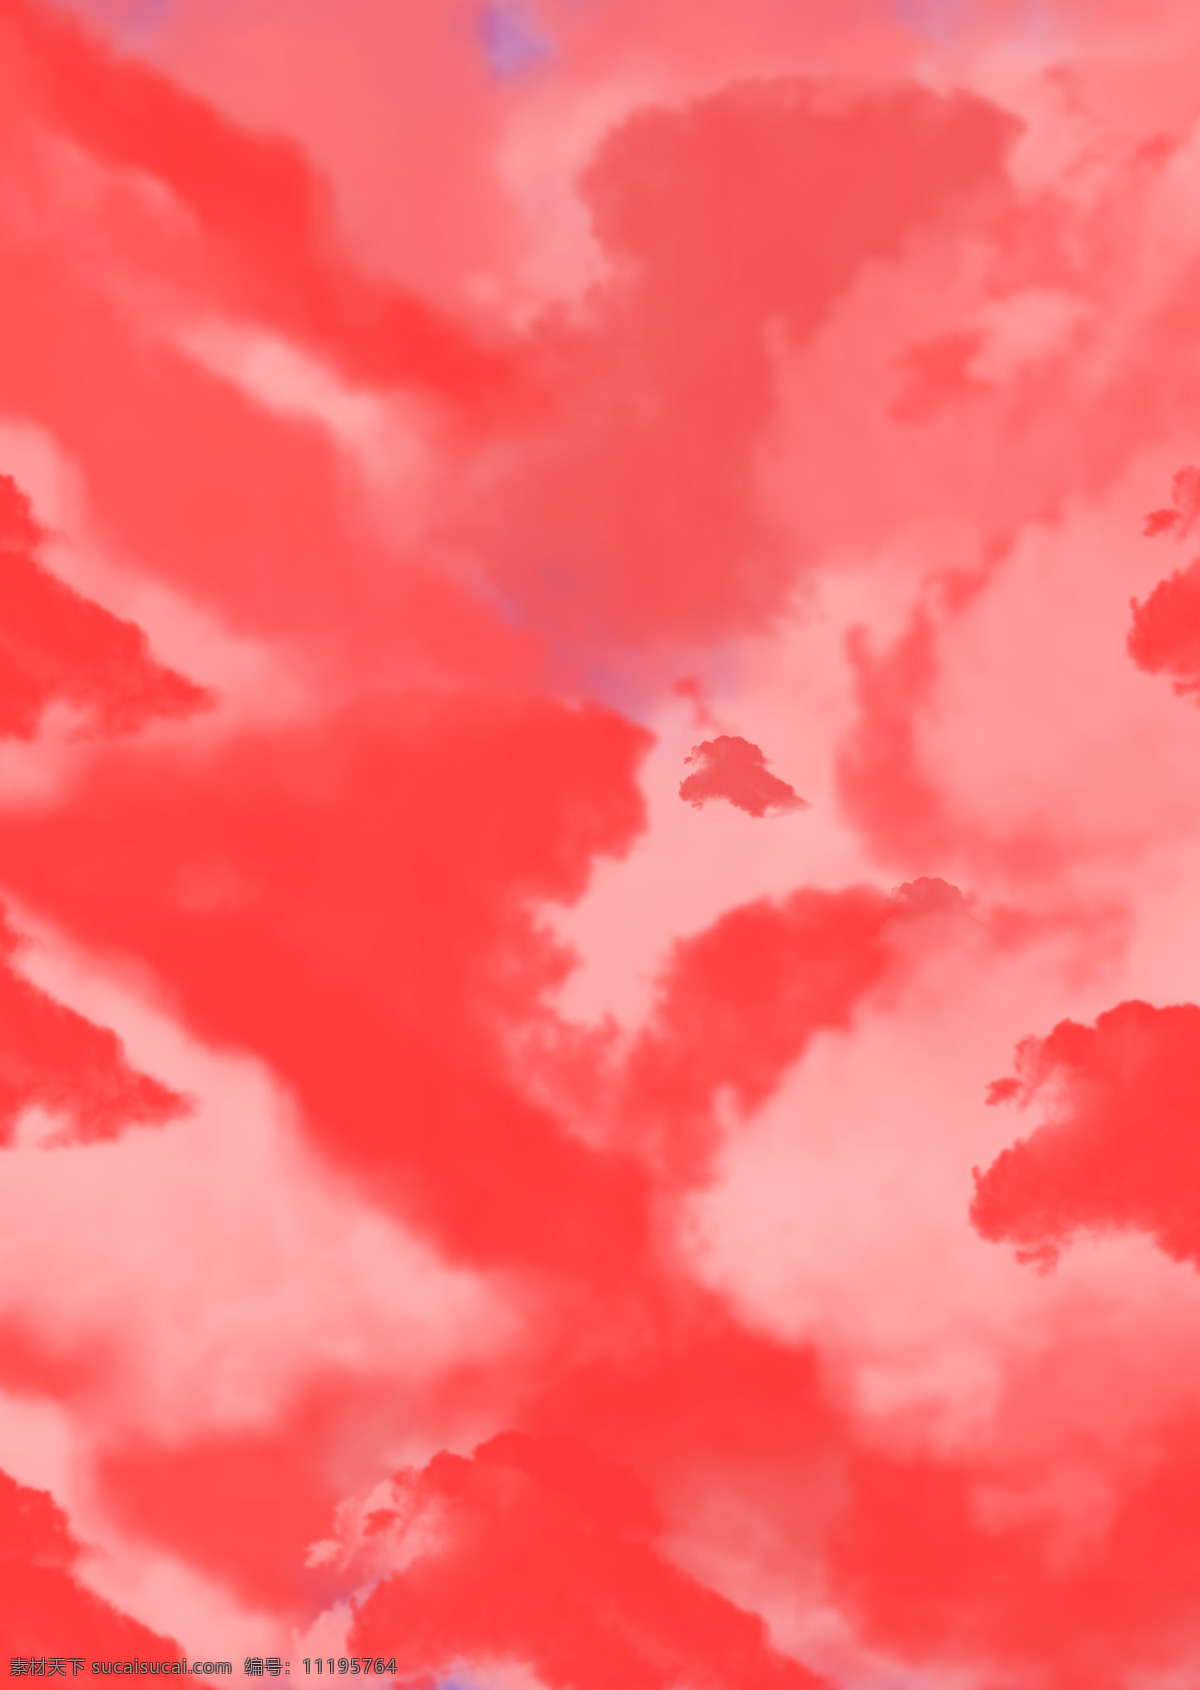 云背景图图片 云 云彩 白云 天空 蓝天 粉色 底纹 纹理 边框 背景底纹 底纹边框 粉色的云